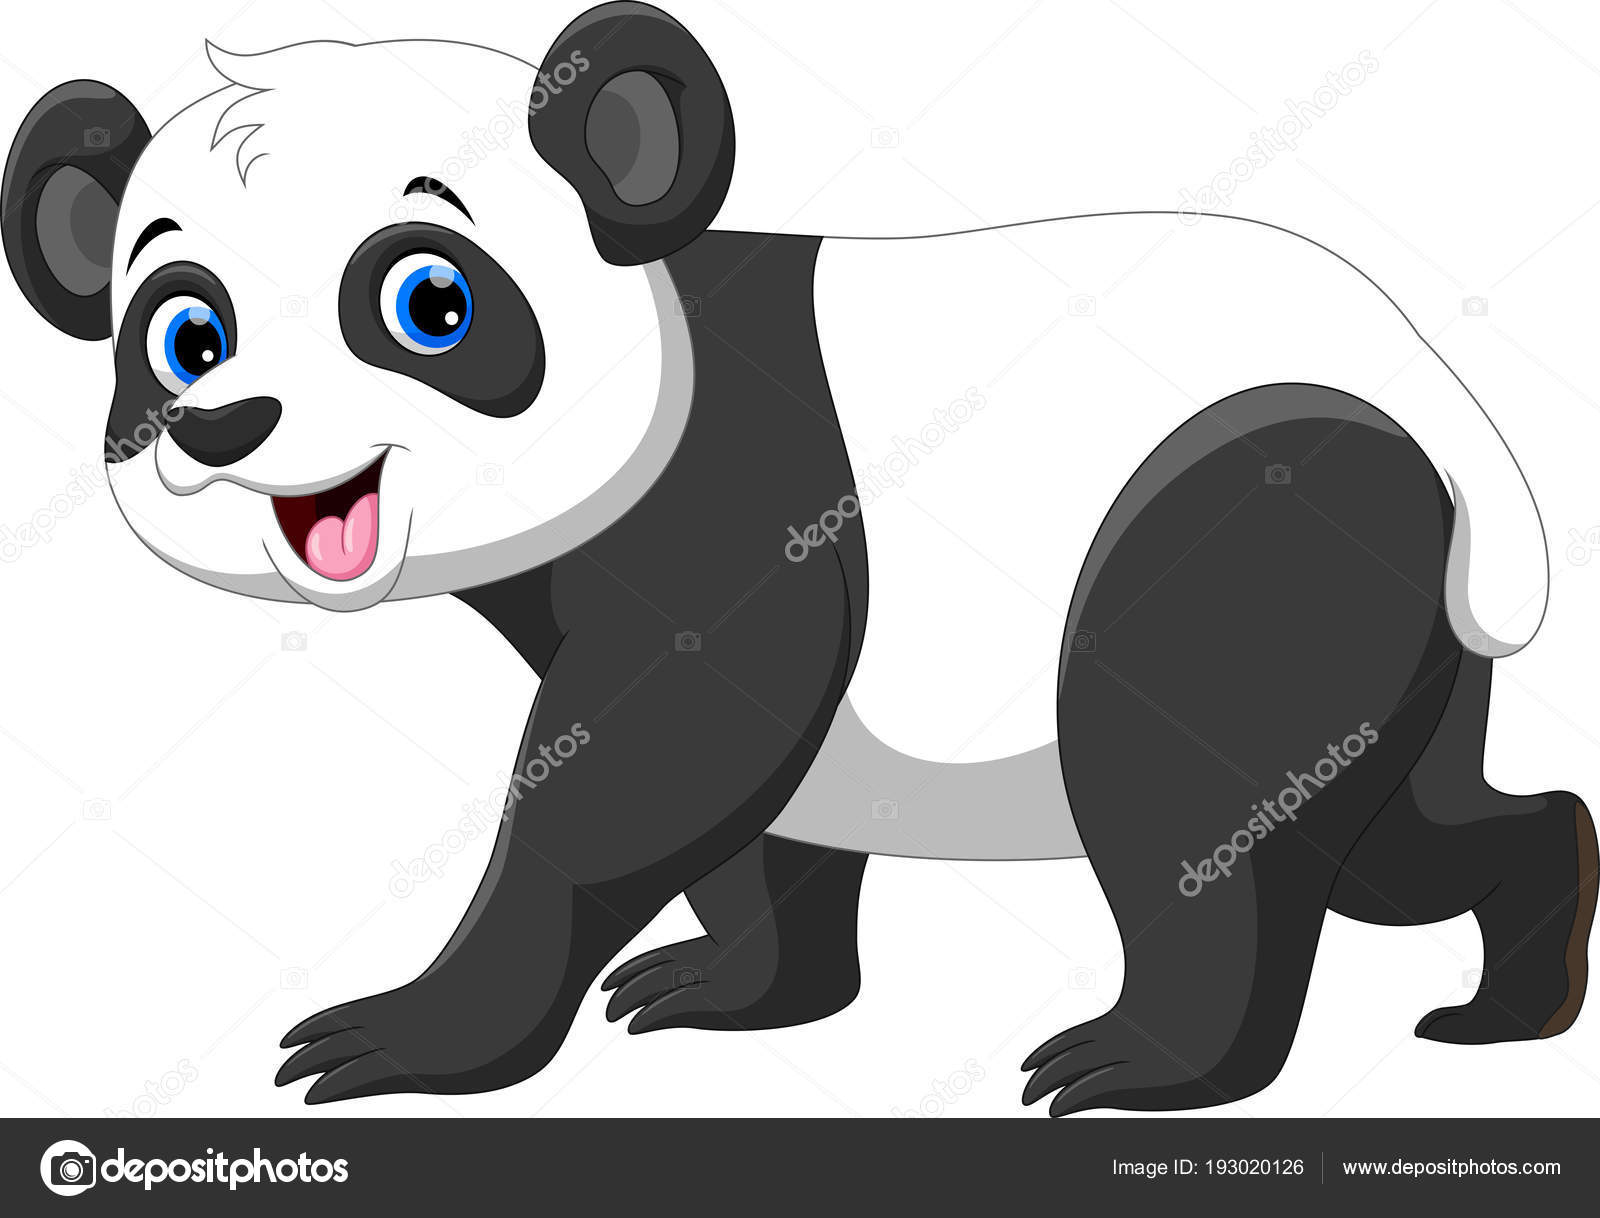 Panda Vermelho Bonito Dos Desenhos Animados Isolado No Fundo Branco.  Ilustração Vetorial. Royalty Free SVG, Cliparts, Vetores, e Ilustrações  Stock. Image 198129030